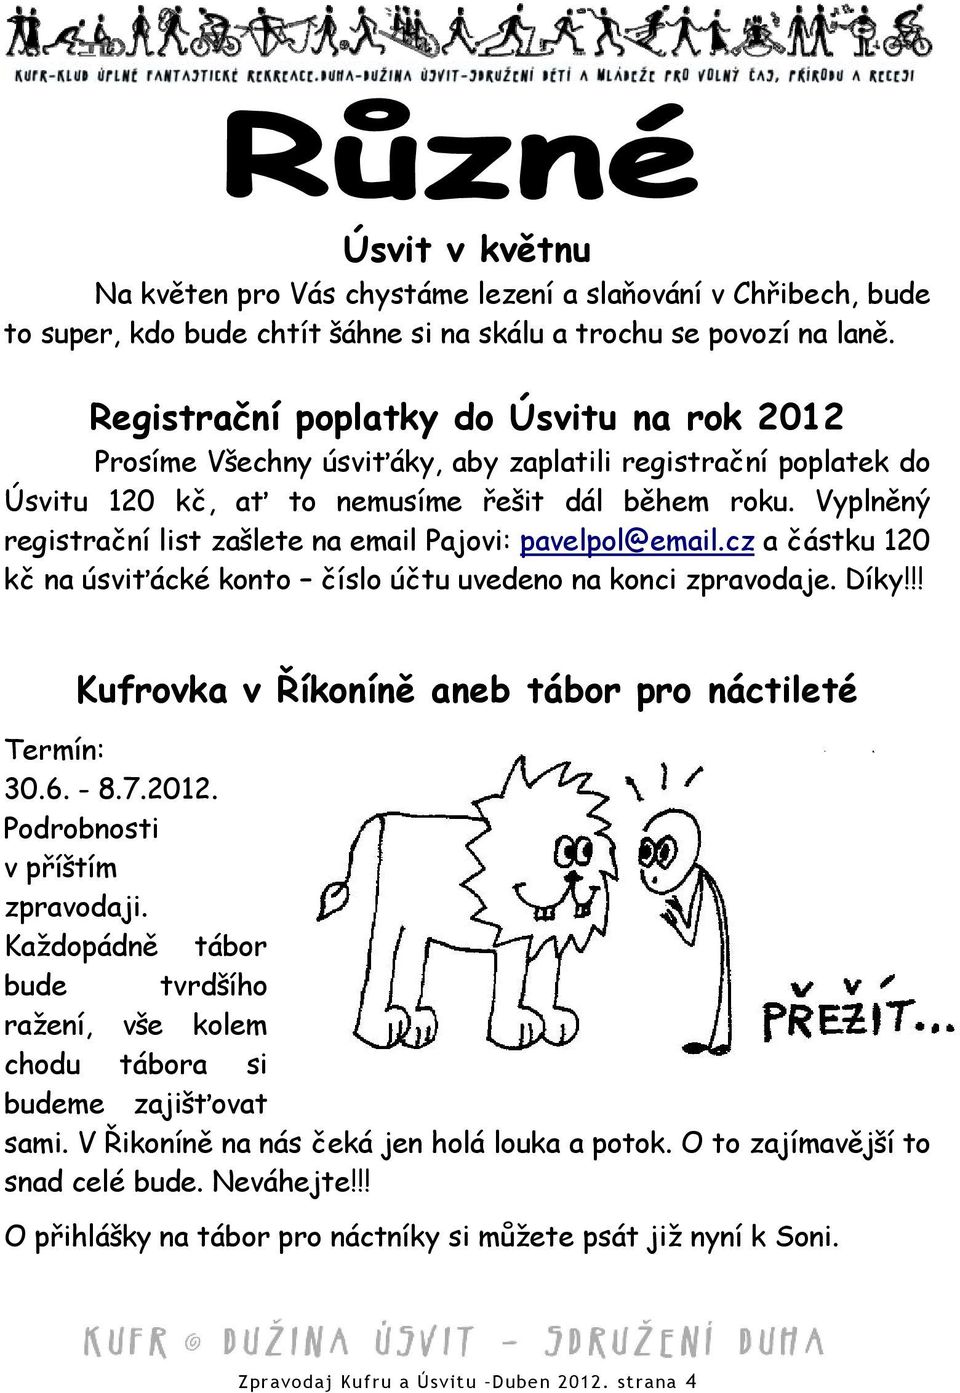 Vyplněný registrační list zašlete na email Pajovi: pavelpol@email.cz a částku 120 kč na úsviťácké konto číslo účtu uvedeno na konci zpravodaje. Díky!